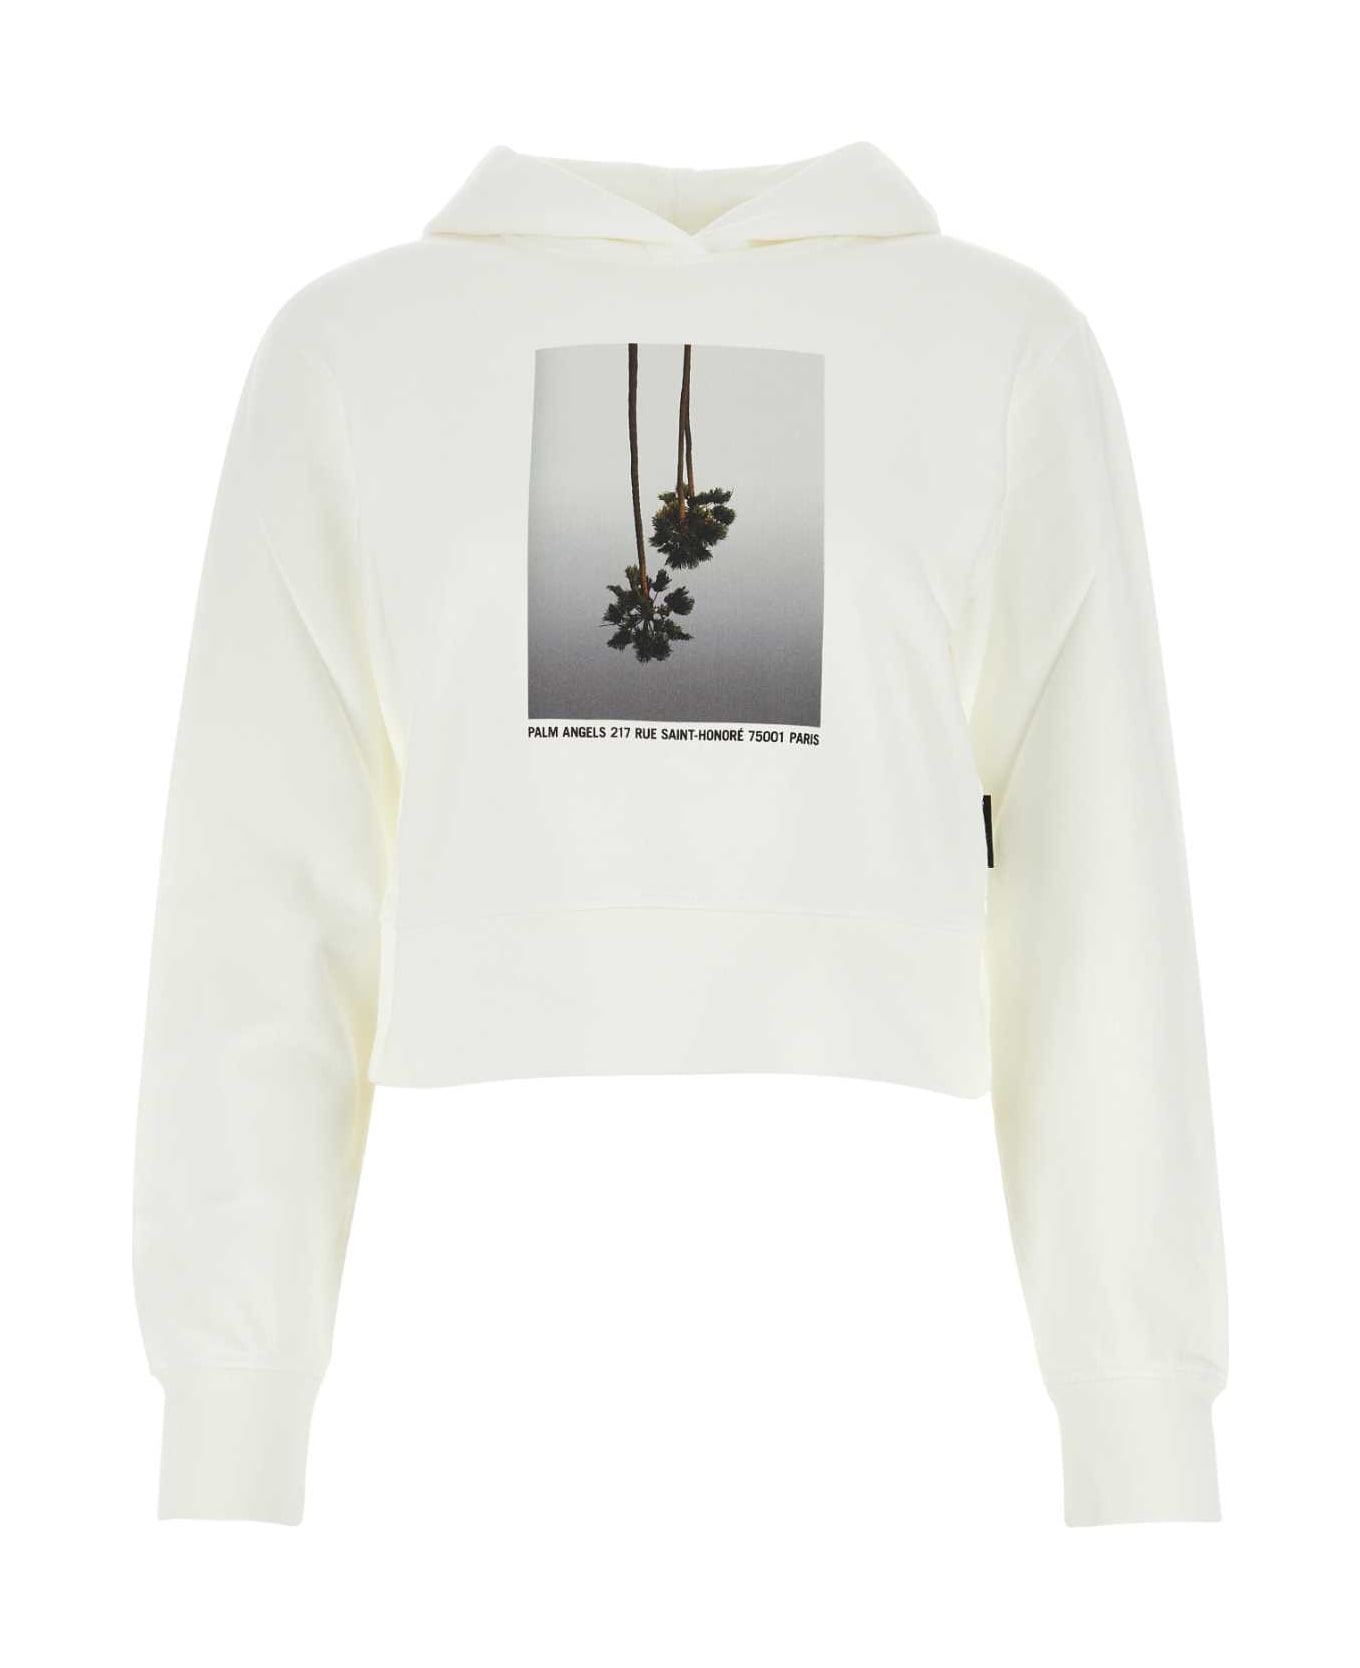 Palm Angels White Cotton Sweatshirt - OFFWHITE フリース